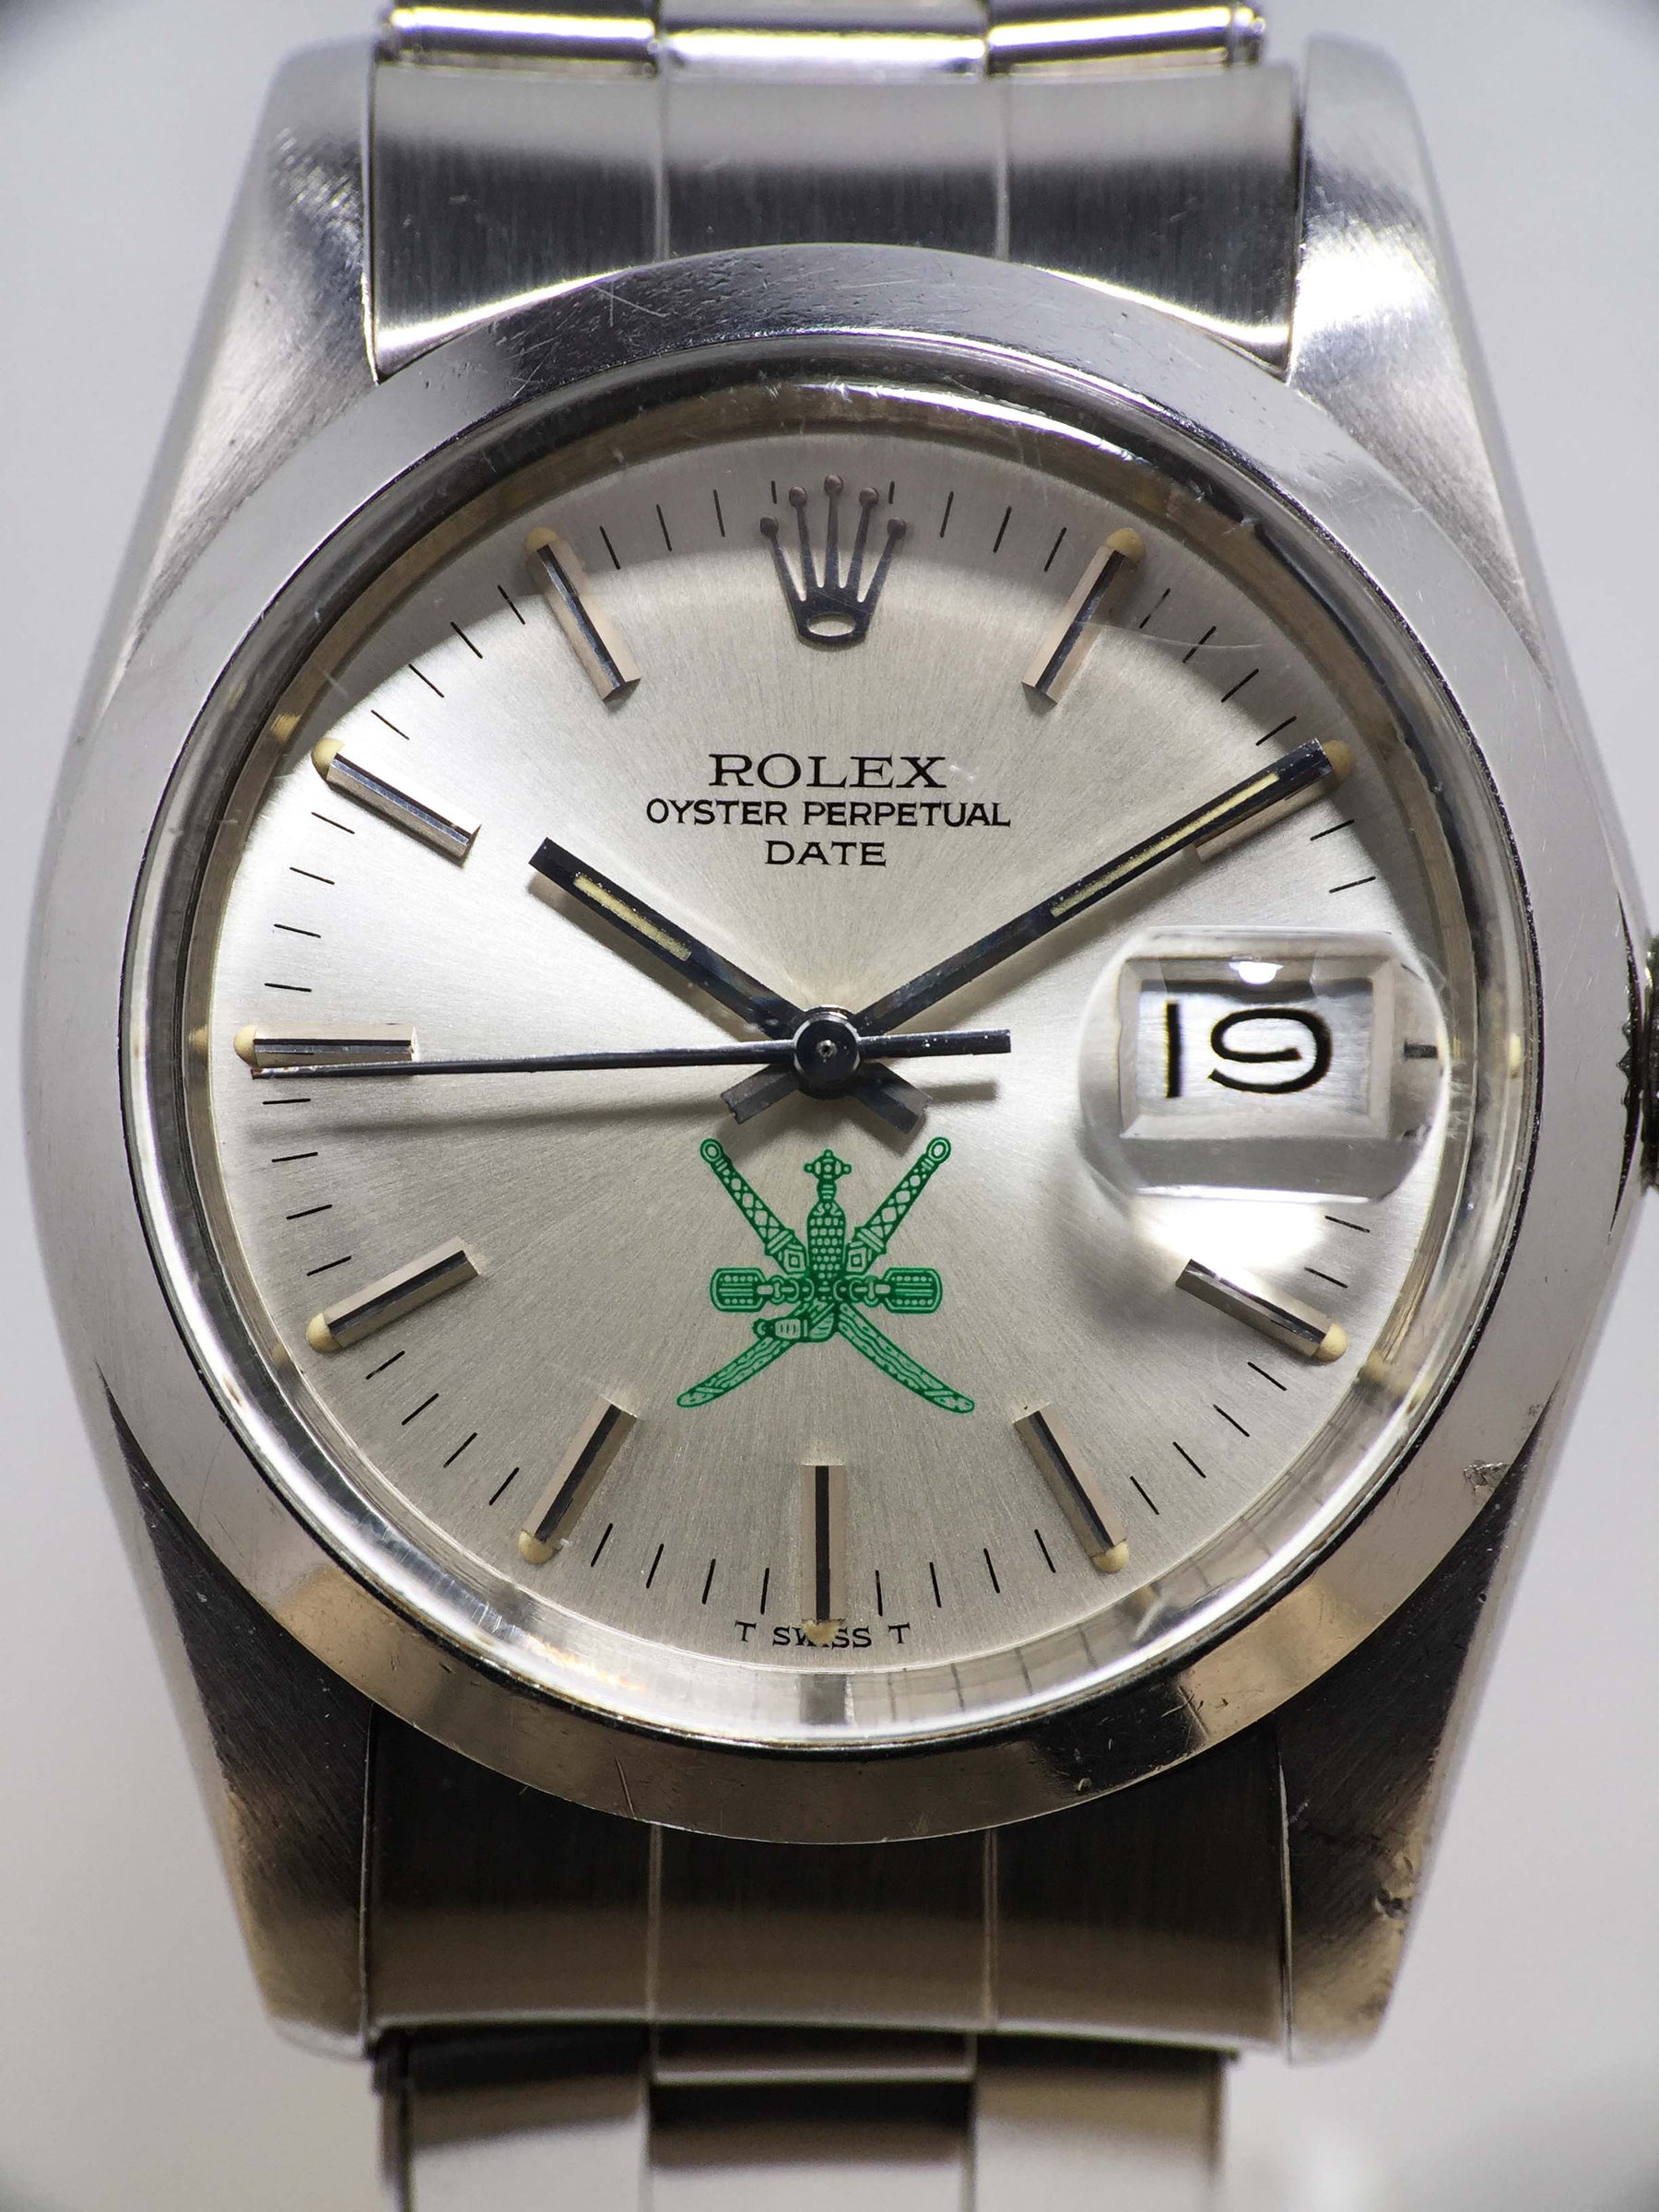 1975 Rolex Oyster Perpetual Date Khanjar Ref. 1500